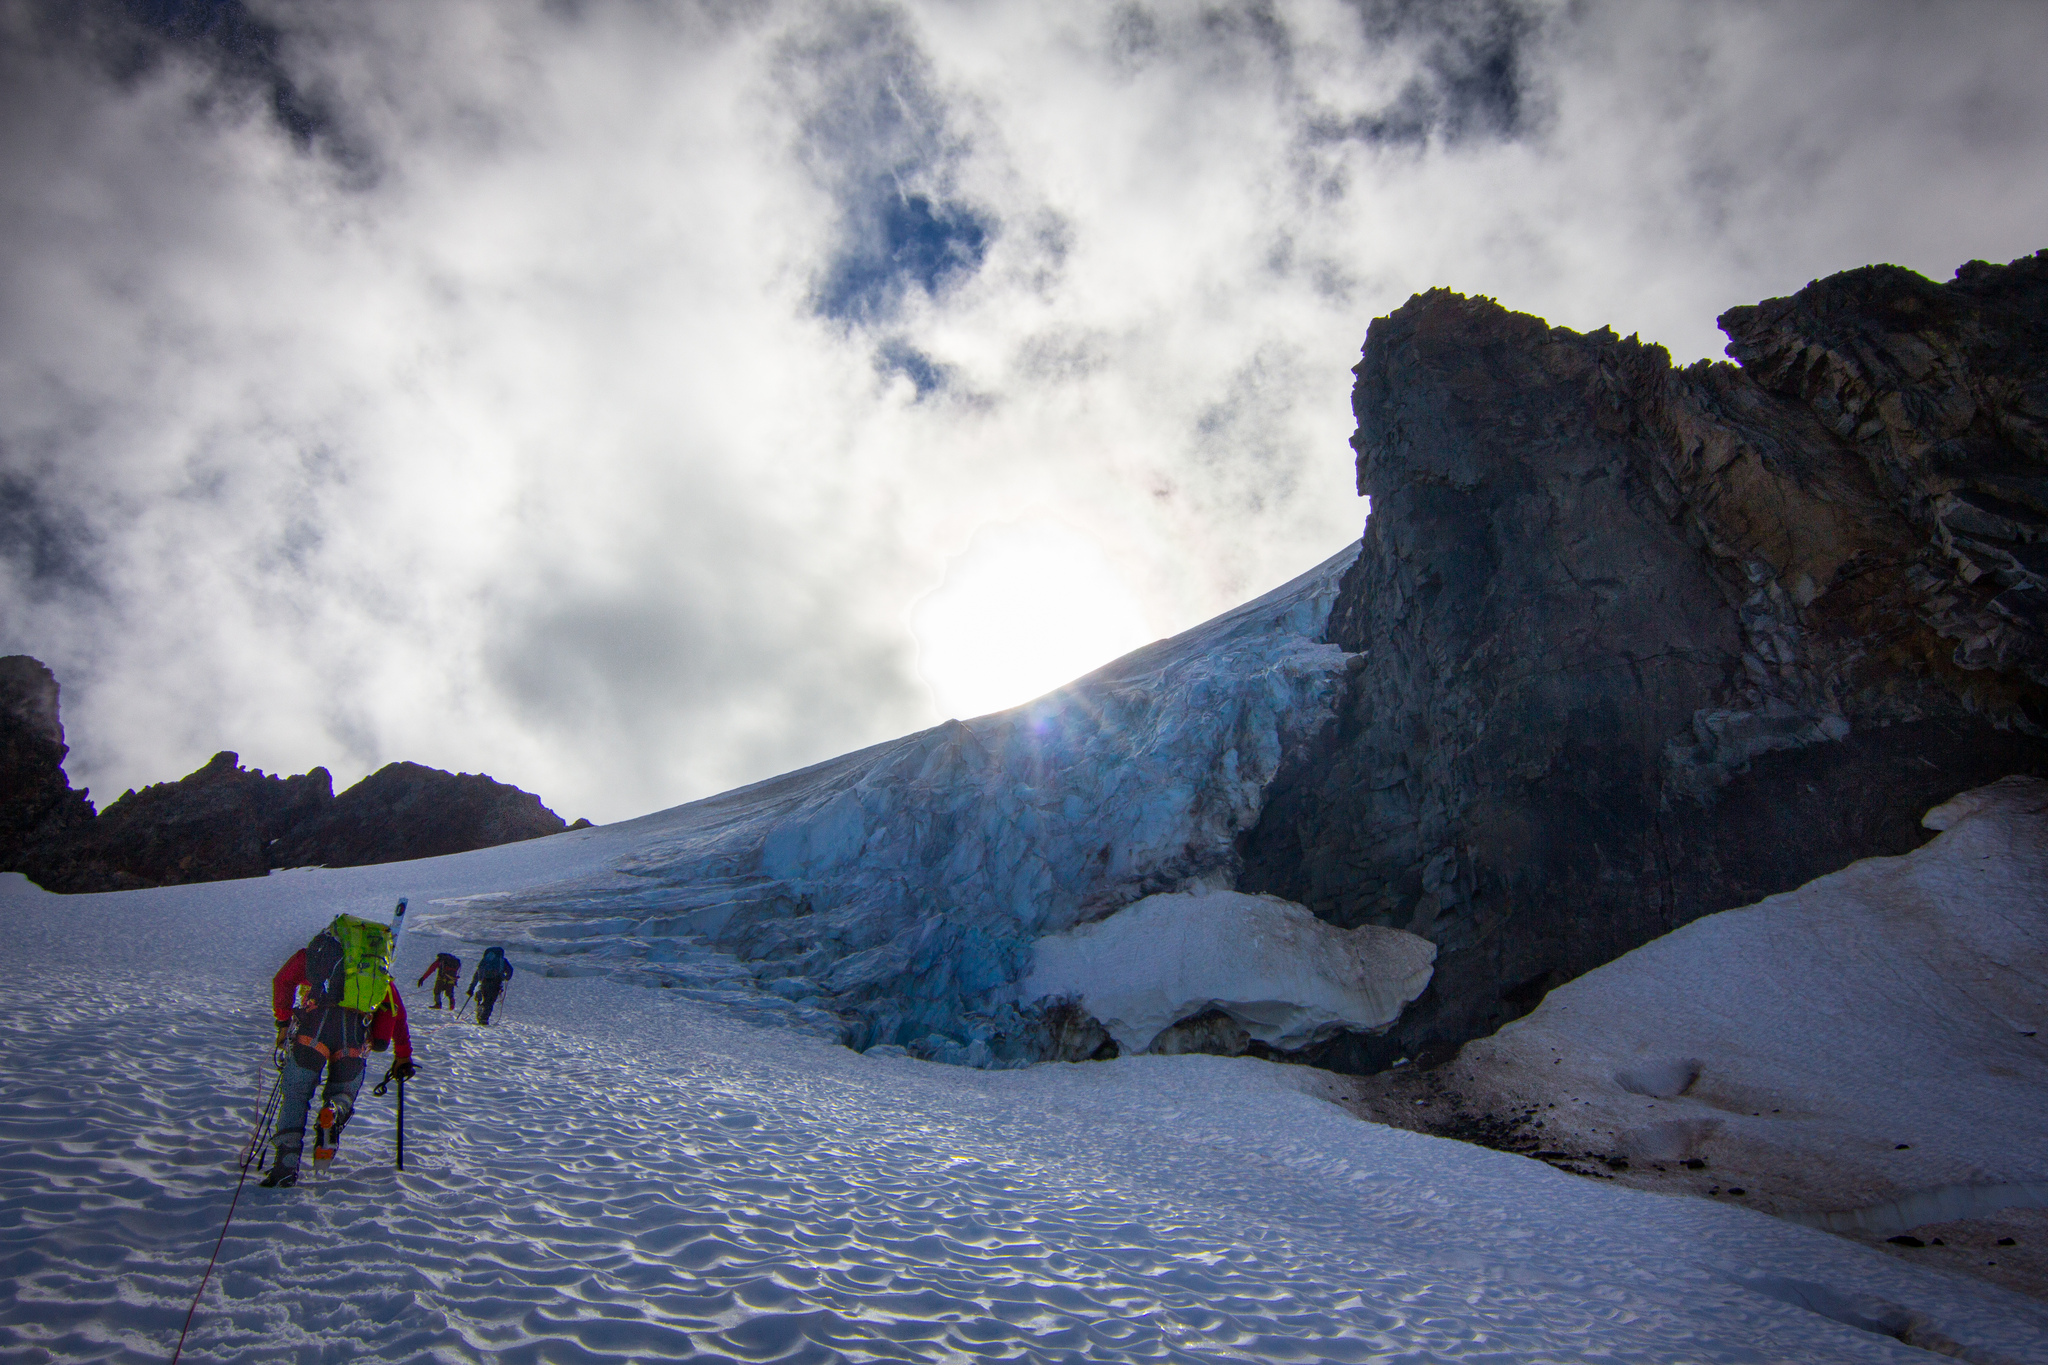 Heading up the Quien Sabe Glacier